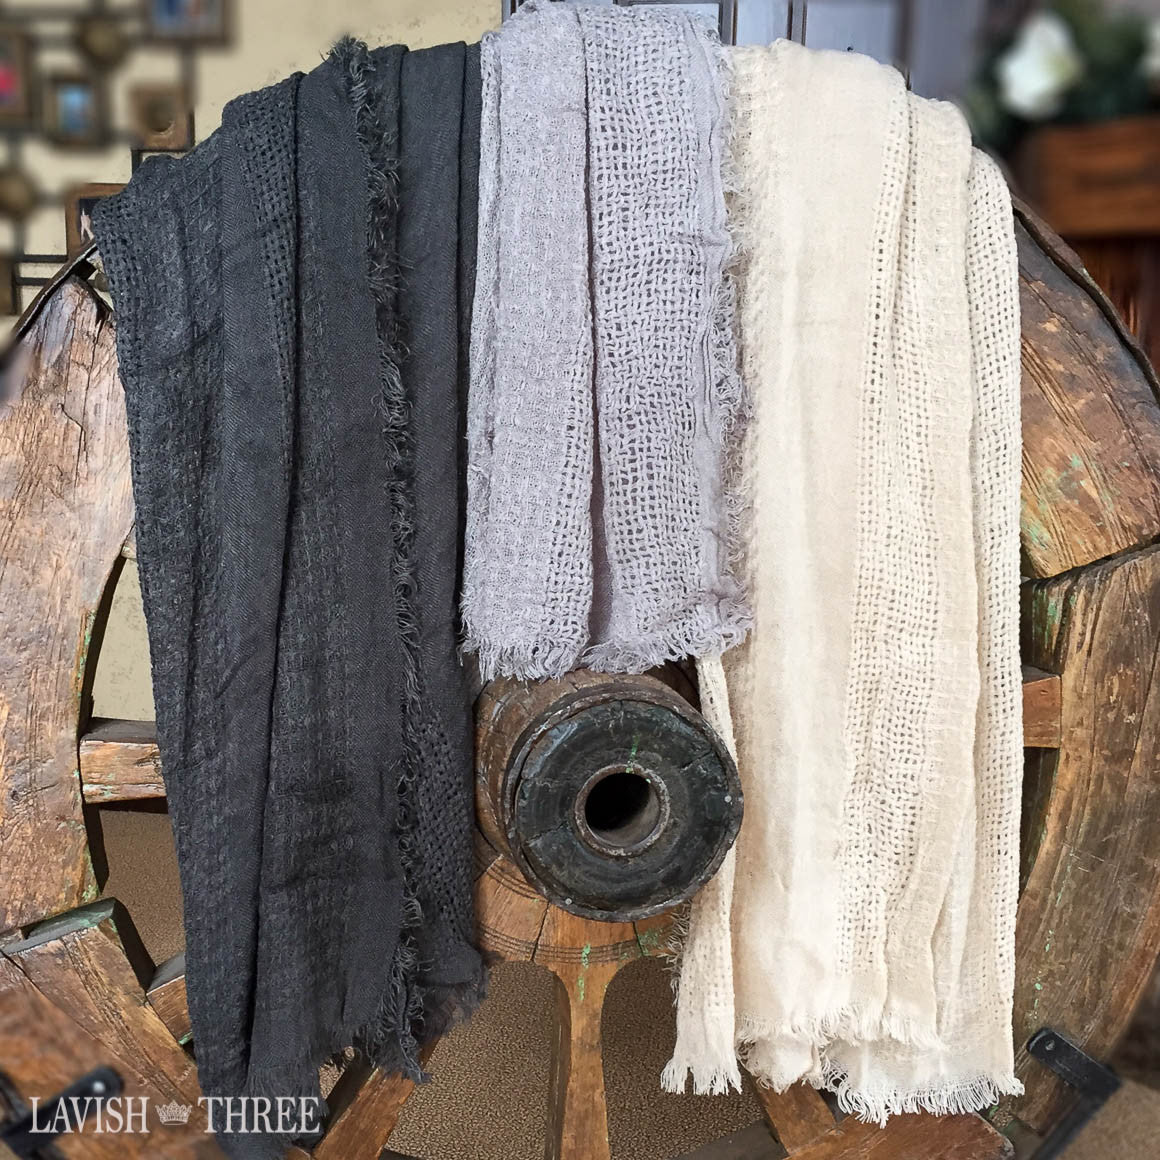 Multi-stitch scarf in dark grey, light grey or ivory